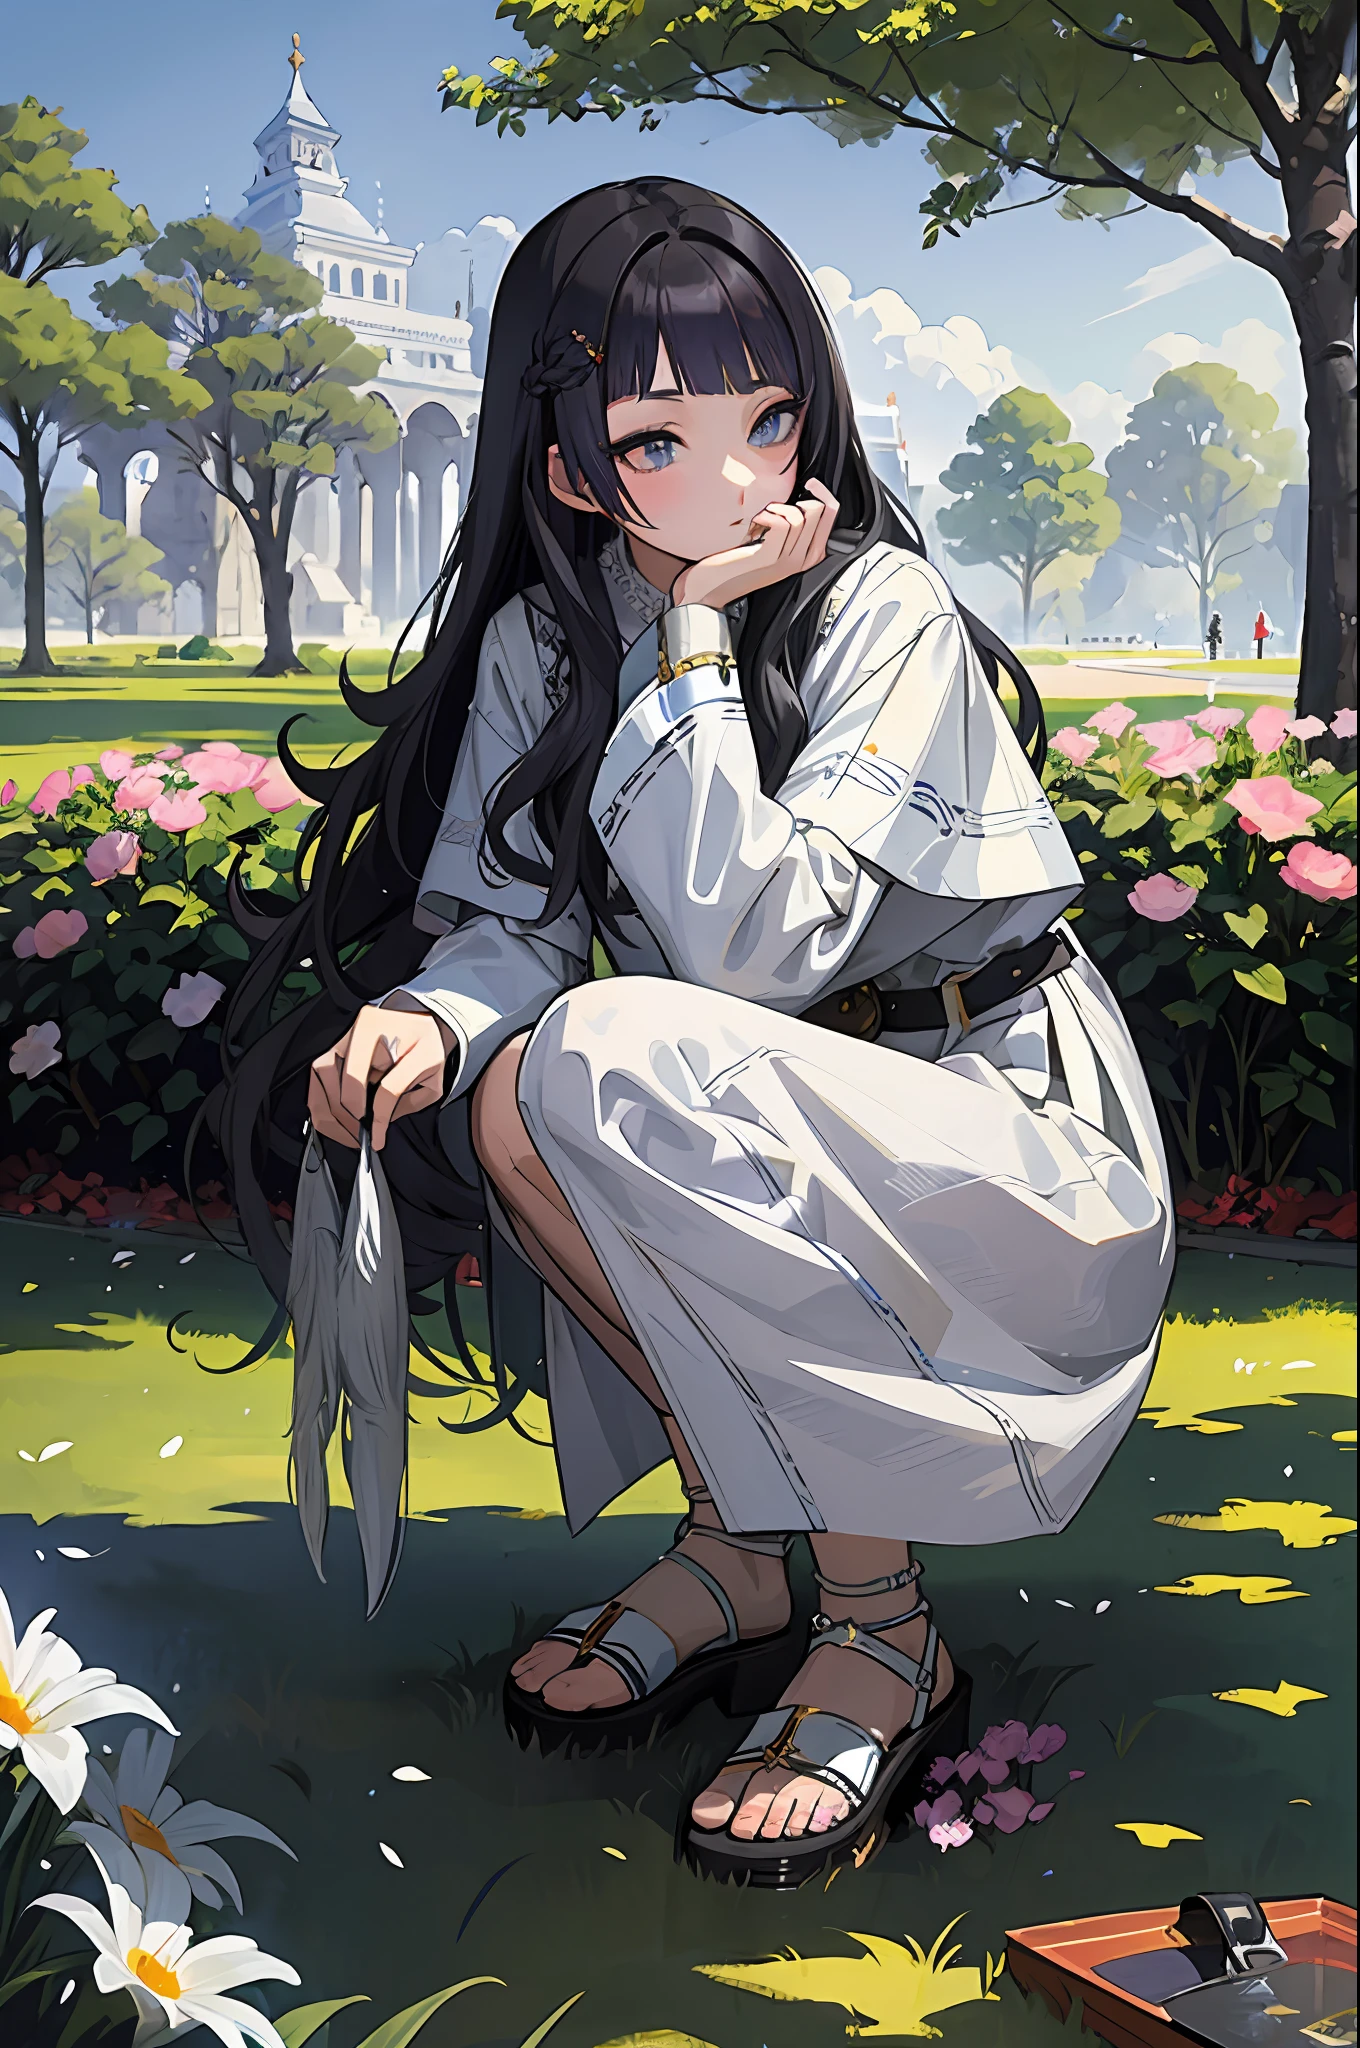 Schöne Illustration, die eine Szene einer schwarzhaarigen Priesterin zeigt, die in einem Park hockt、Fügen Sie eine Haardarstellung ein, die einen Teil grauer Haare zeigt。Panchira